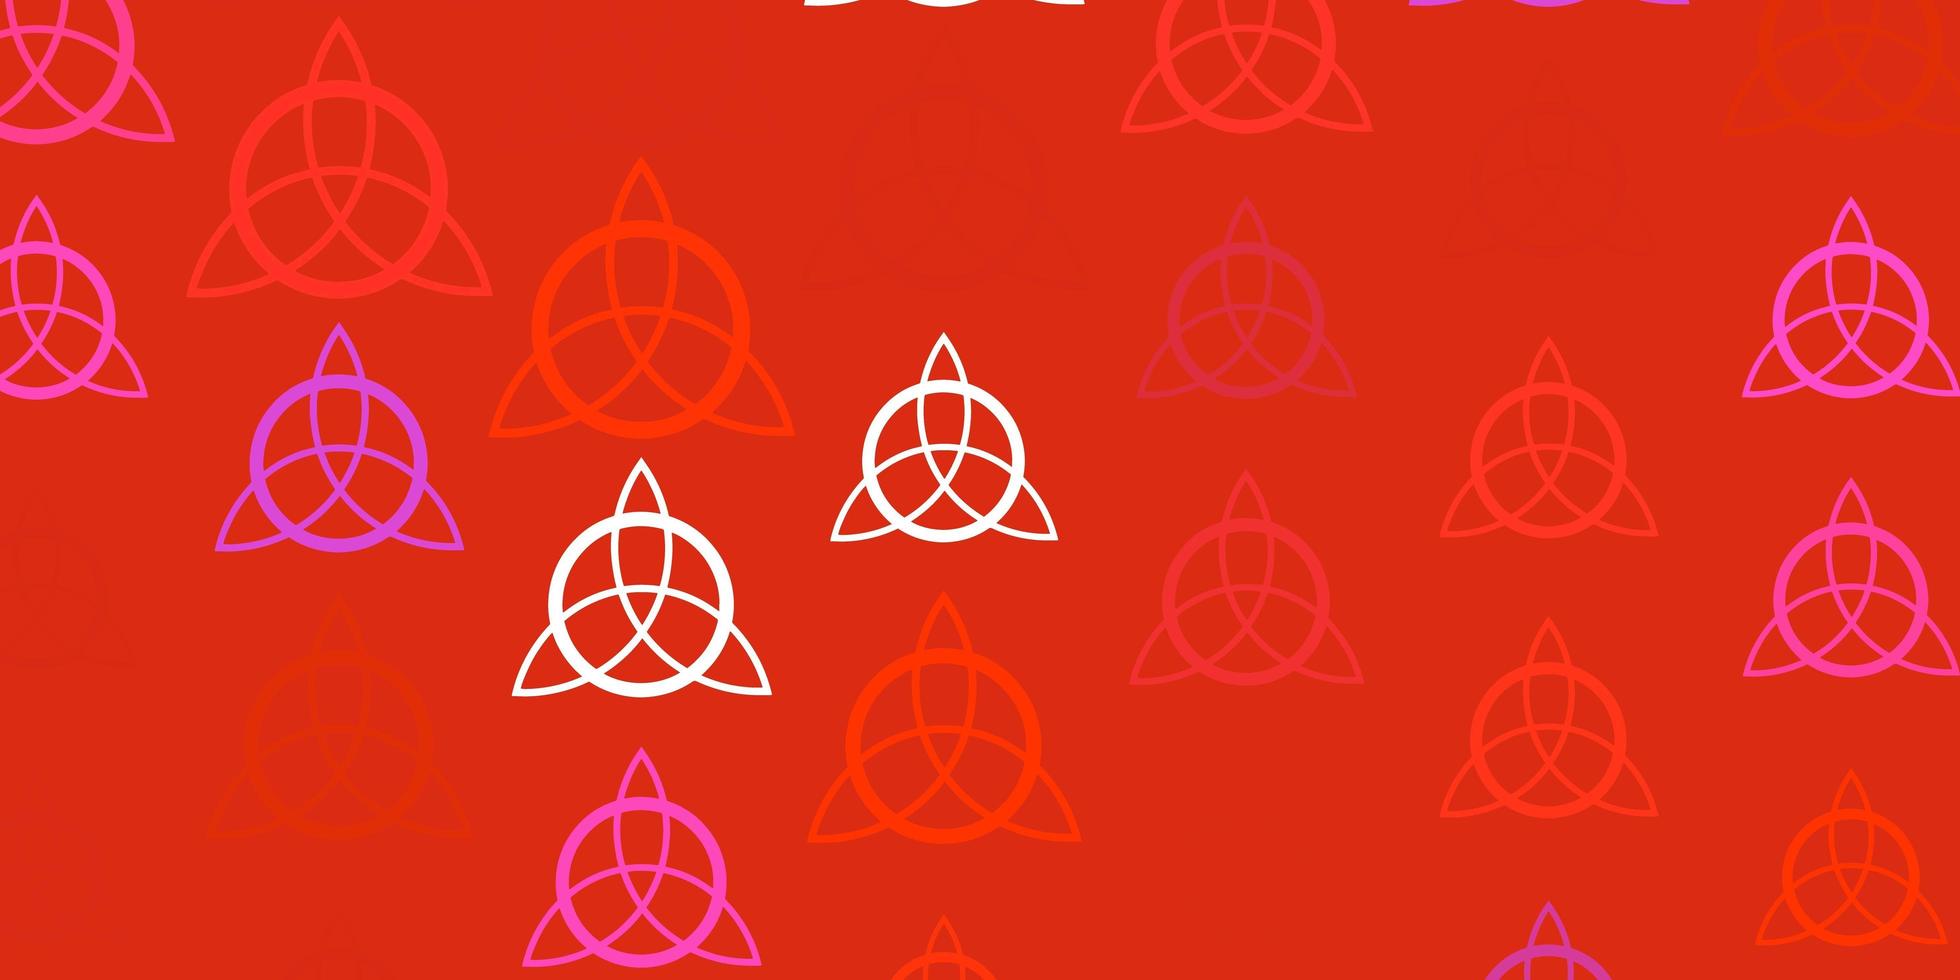 ljusrosa, röd vektorstruktur med religionssymboler. vektor